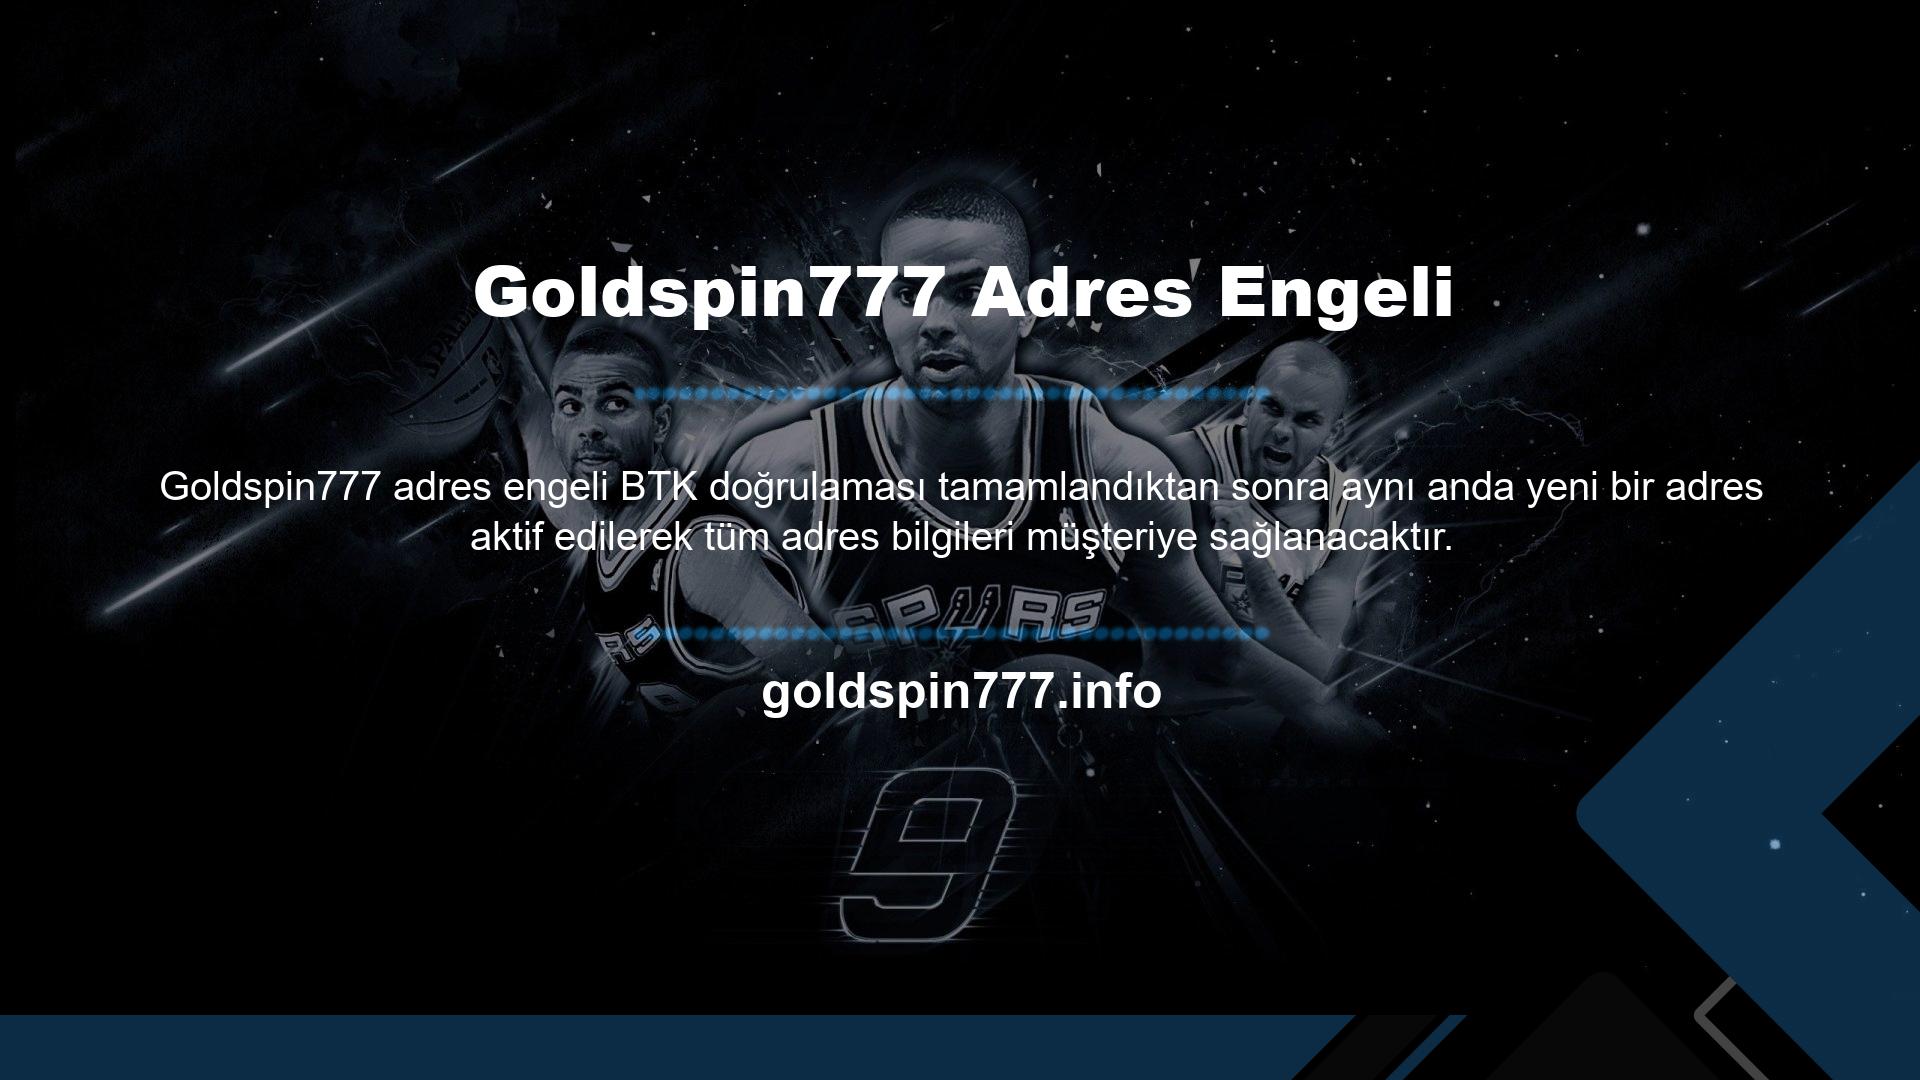 Örneğin sosyal medya hesaplarınızda oluşturulan reklamlarda kaç Goldspin777 giriş adresinin çıktığını anında görebilirsiniz